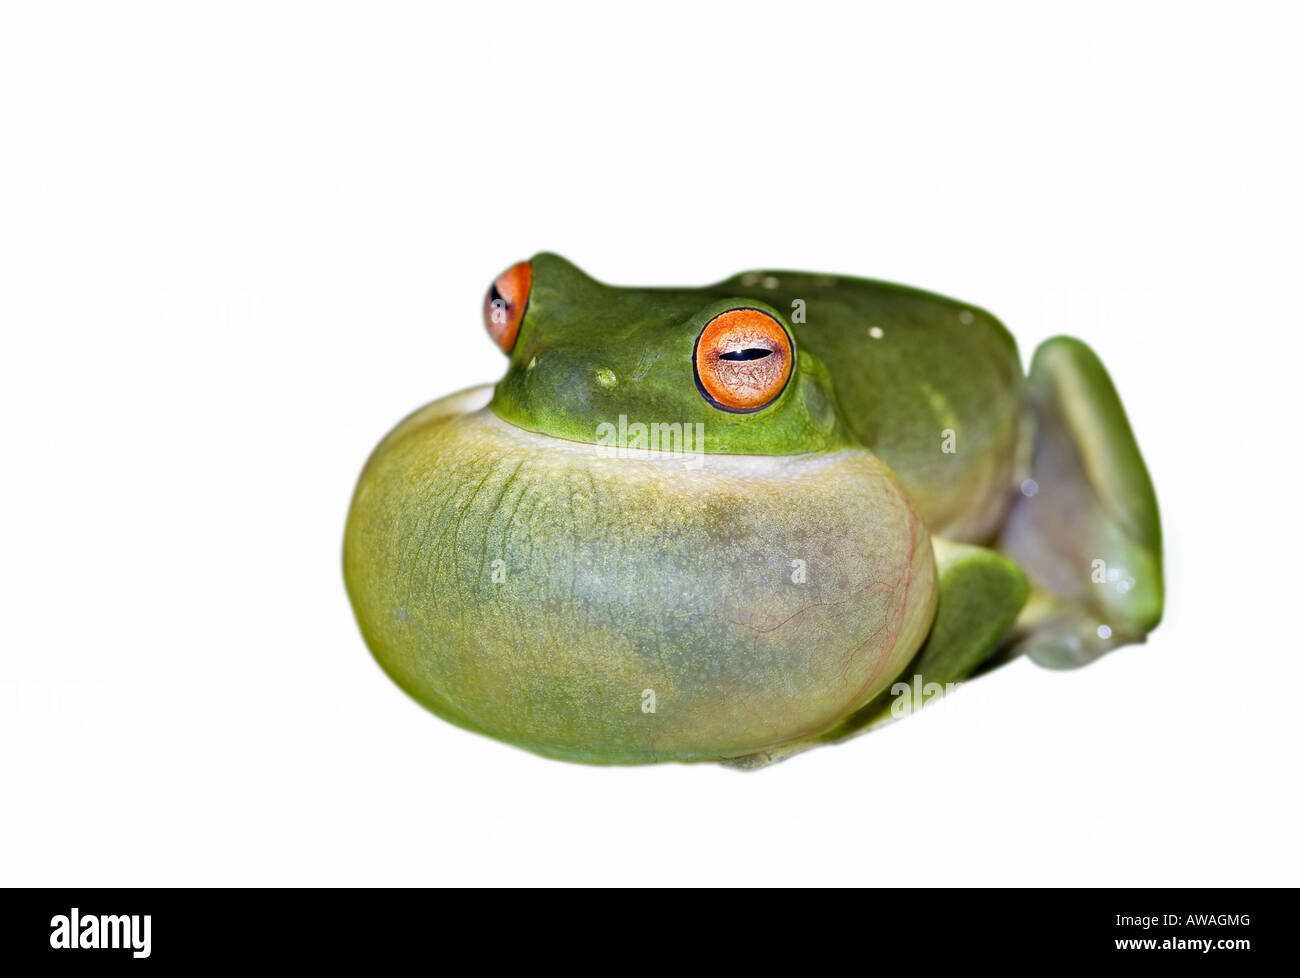 La rana arborícola verde todos engreído acerca a croar aislado en blanco Foto de stock